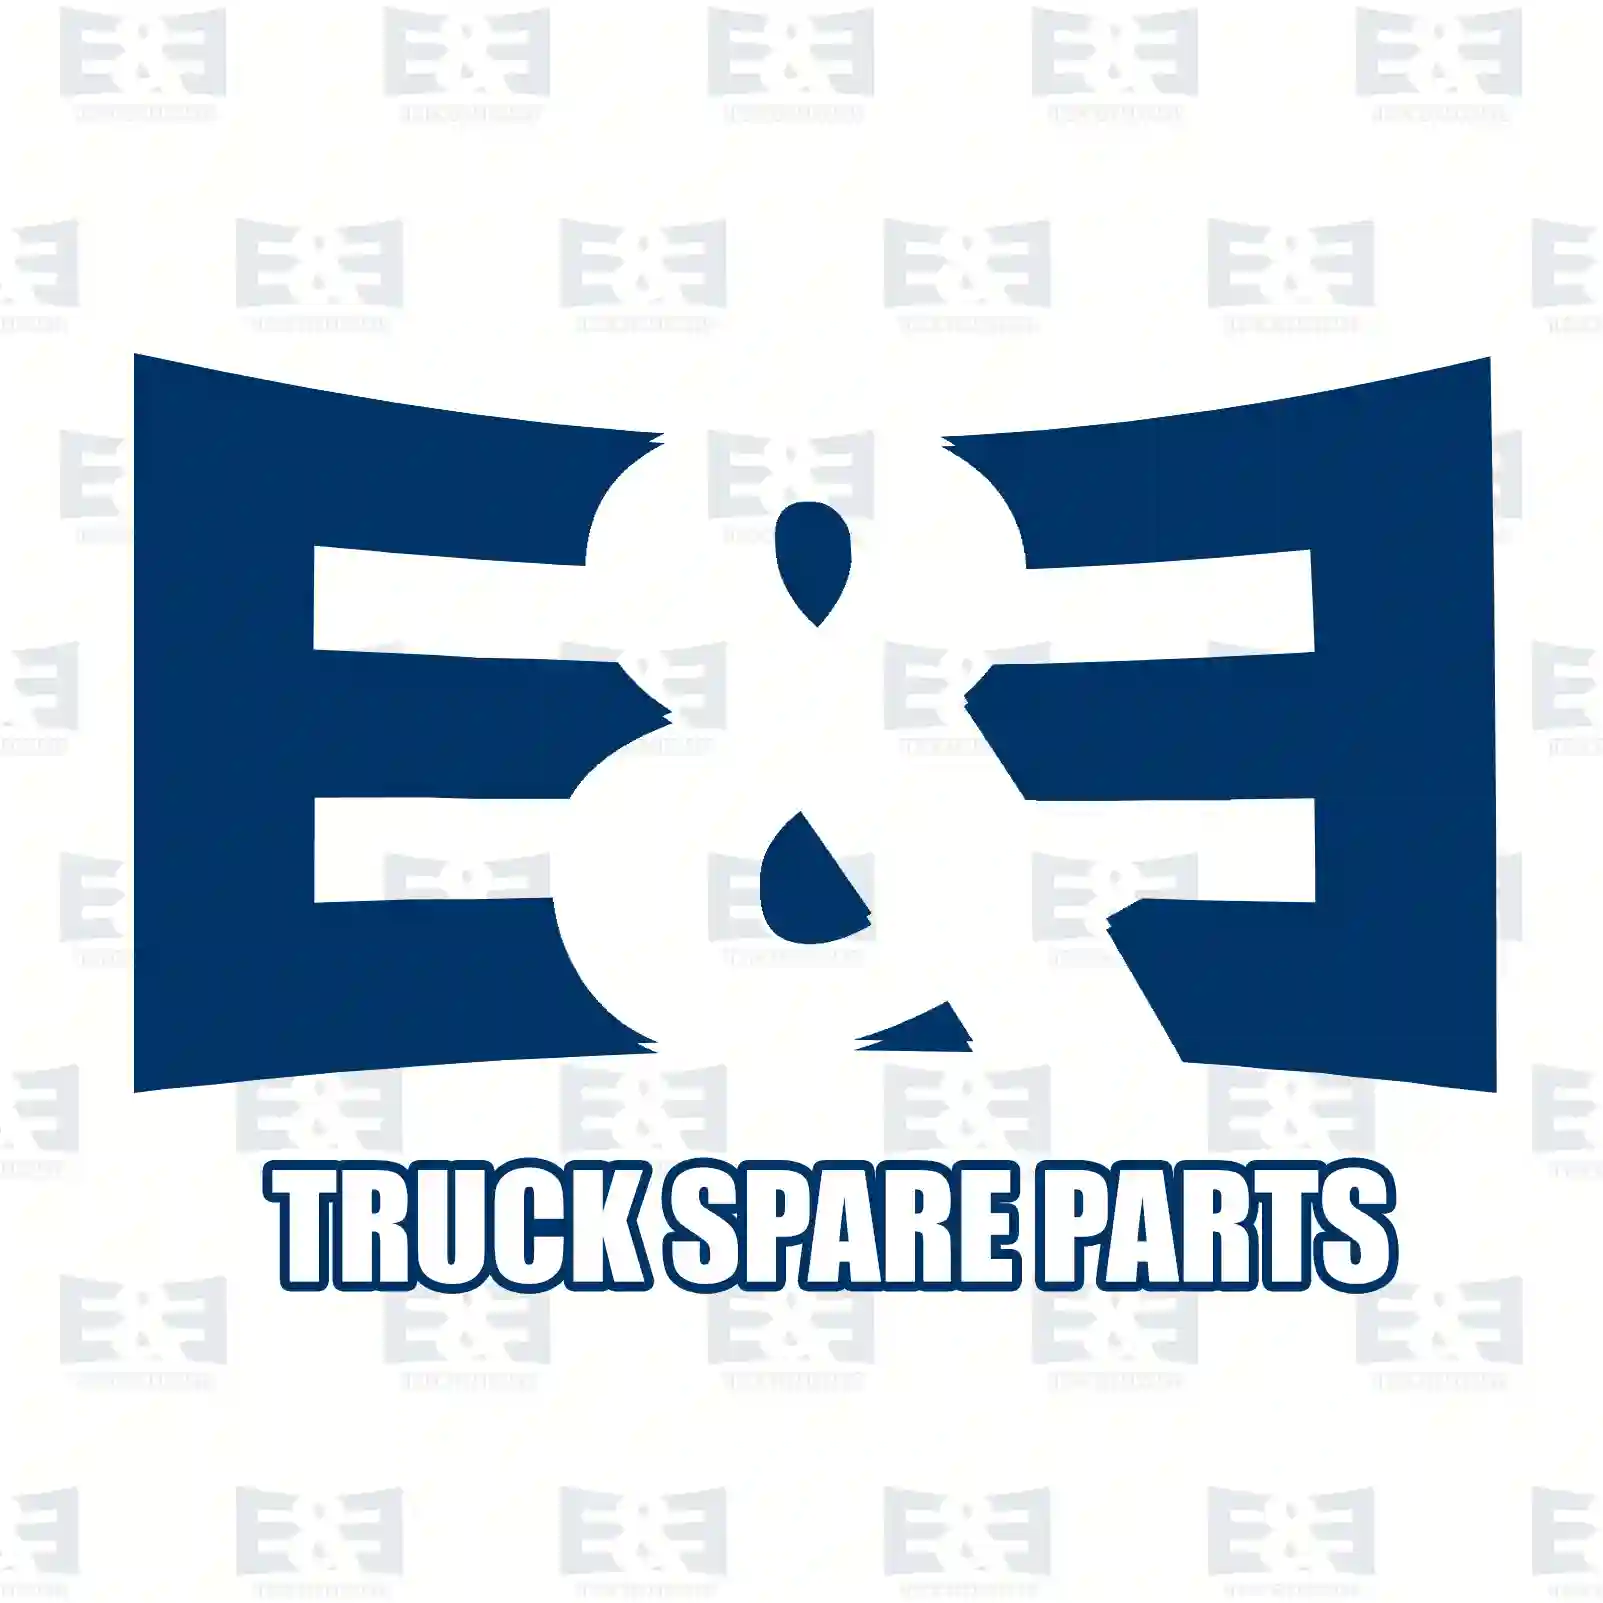 V-belt kit, 2E2285847, 0761440, 1226492, 1238680, 761440, 0019977592, 0059978592, 0079976392, 0079979592, 4766787002, ZG02387-0008 ||  2E2285847 E&E Truck Spare Parts | Truck Spare Parts, Auotomotive Spare Parts V-belt kit, 2E2285847, 0761440, 1226492, 1238680, 761440, 0019977592, 0059978592, 0079976392, 0079979592, 4766787002, ZG02387-0008 ||  2E2285847 E&E Truck Spare Parts | Truck Spare Parts, Auotomotive Spare Parts